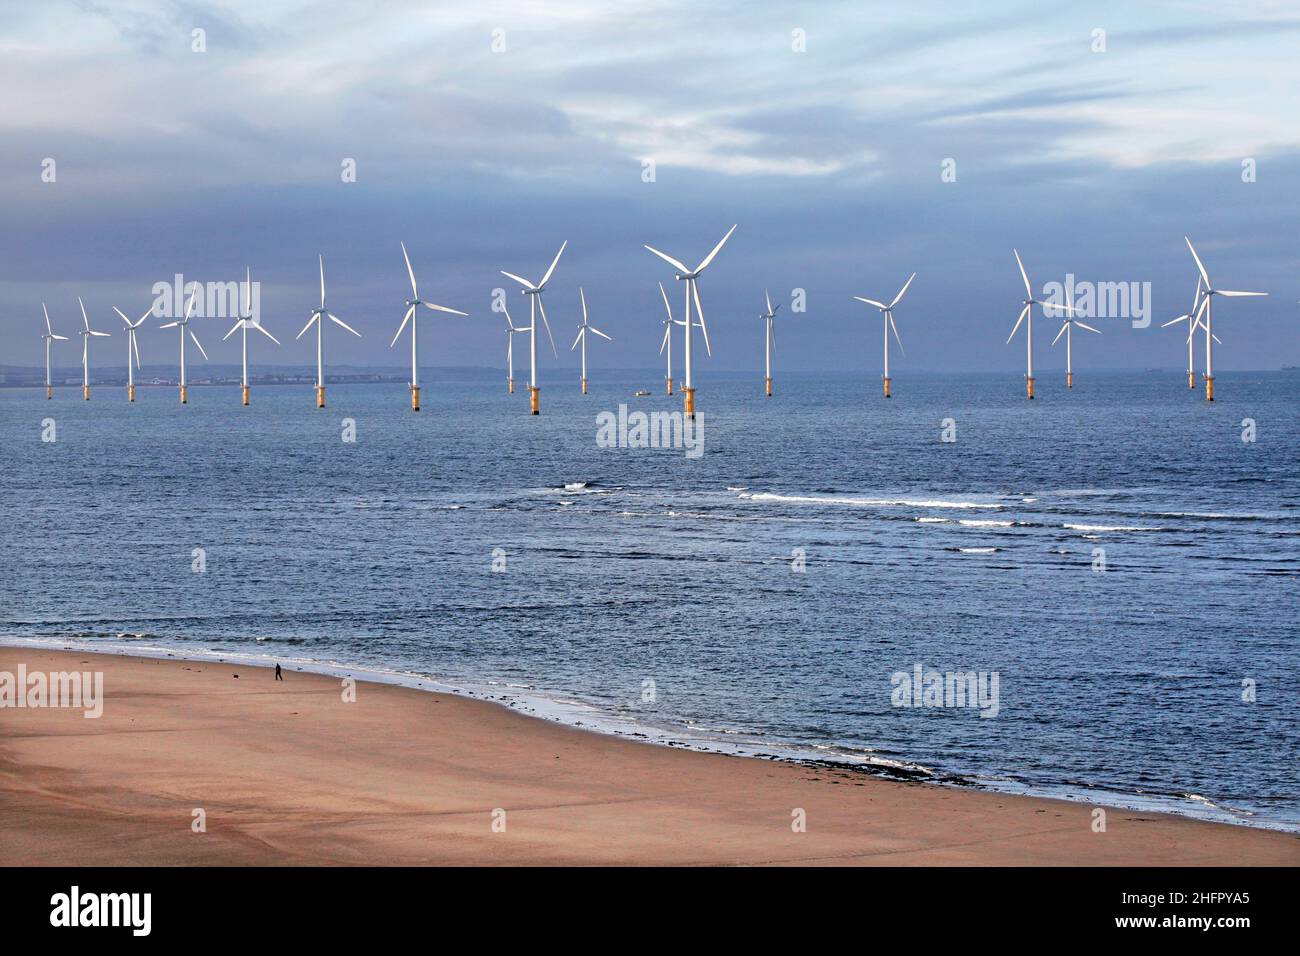 Le parc éolien offshore de Teesside à Redcar, dans le nord-est de l'Angleterre.Photo: Stuart Boulton. Banque D'Images